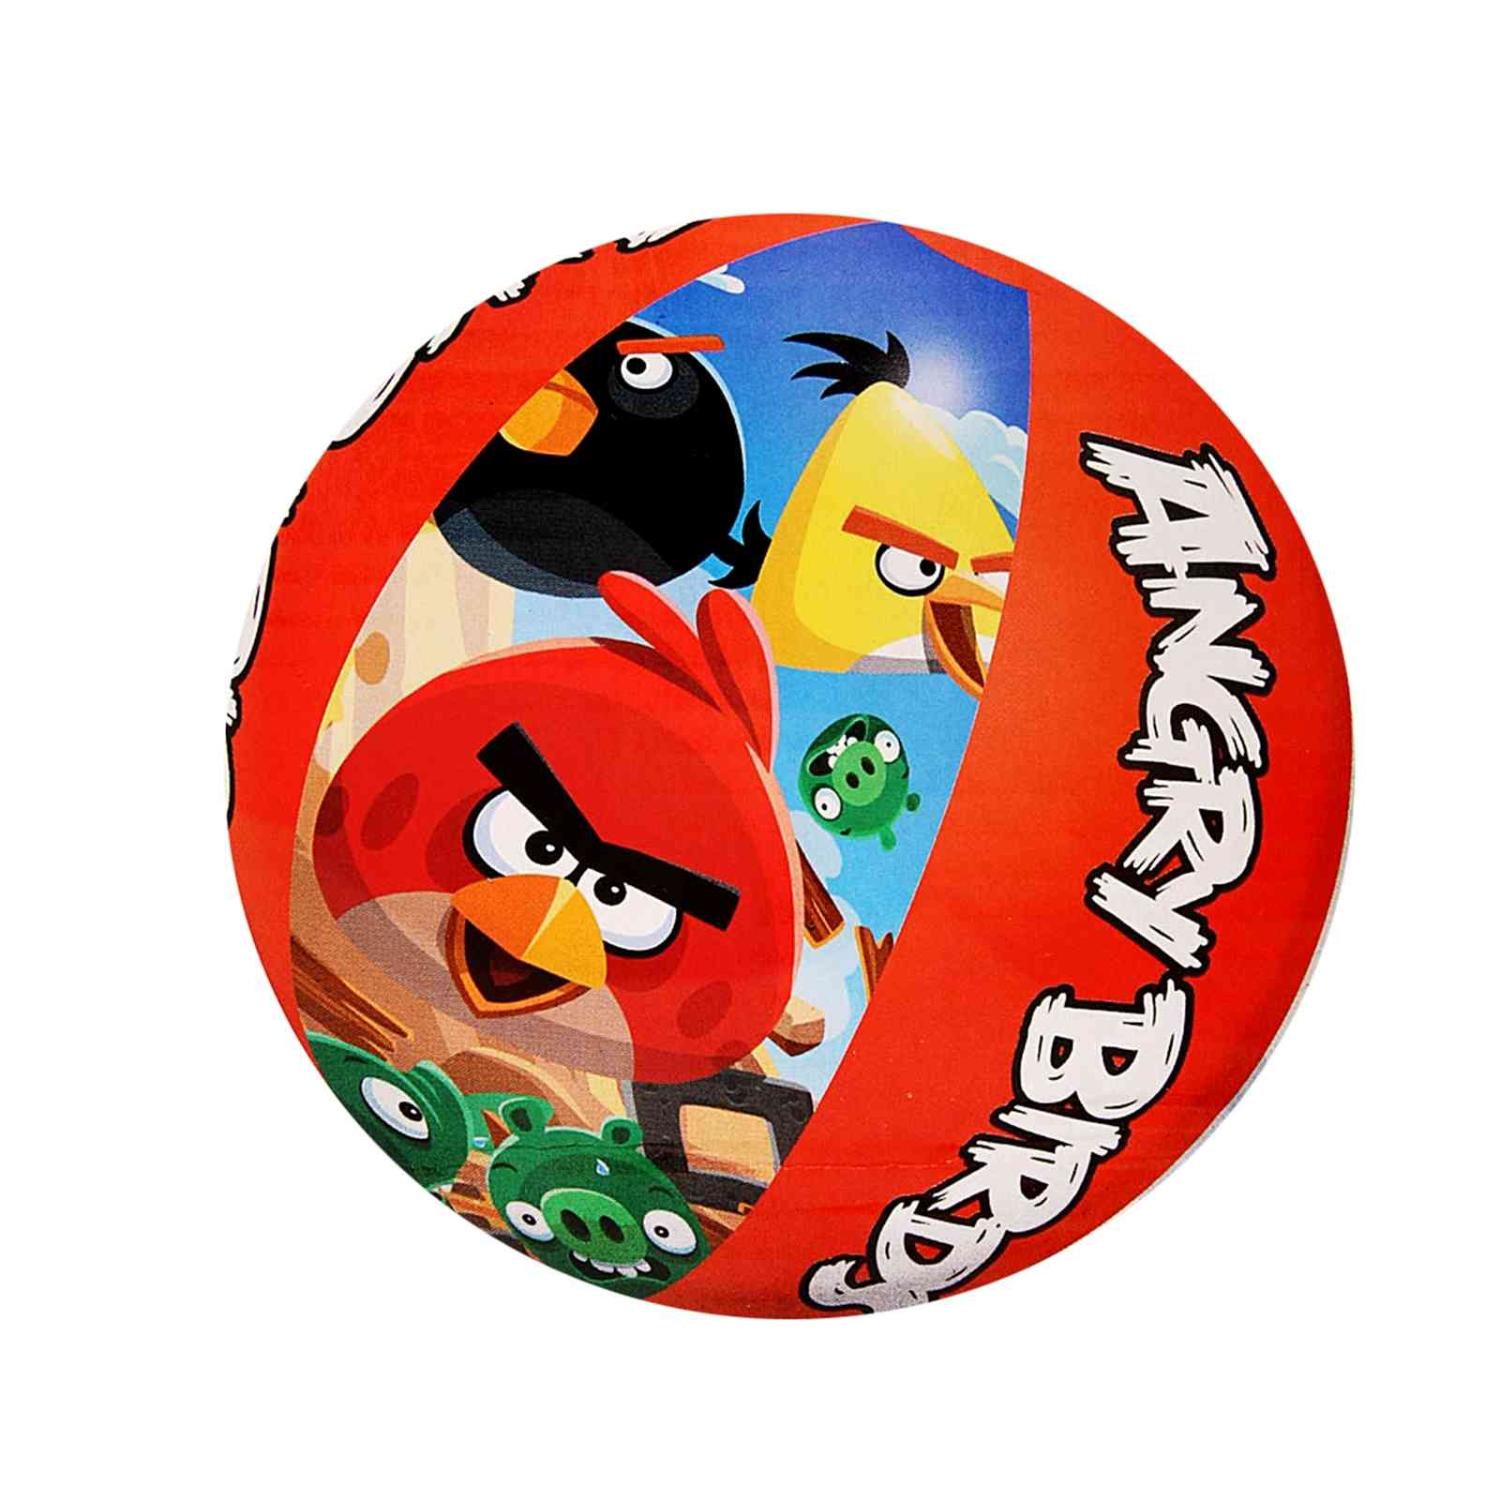 Пляжный мяч 51см "Angry Birds", Bestway 96101 BW